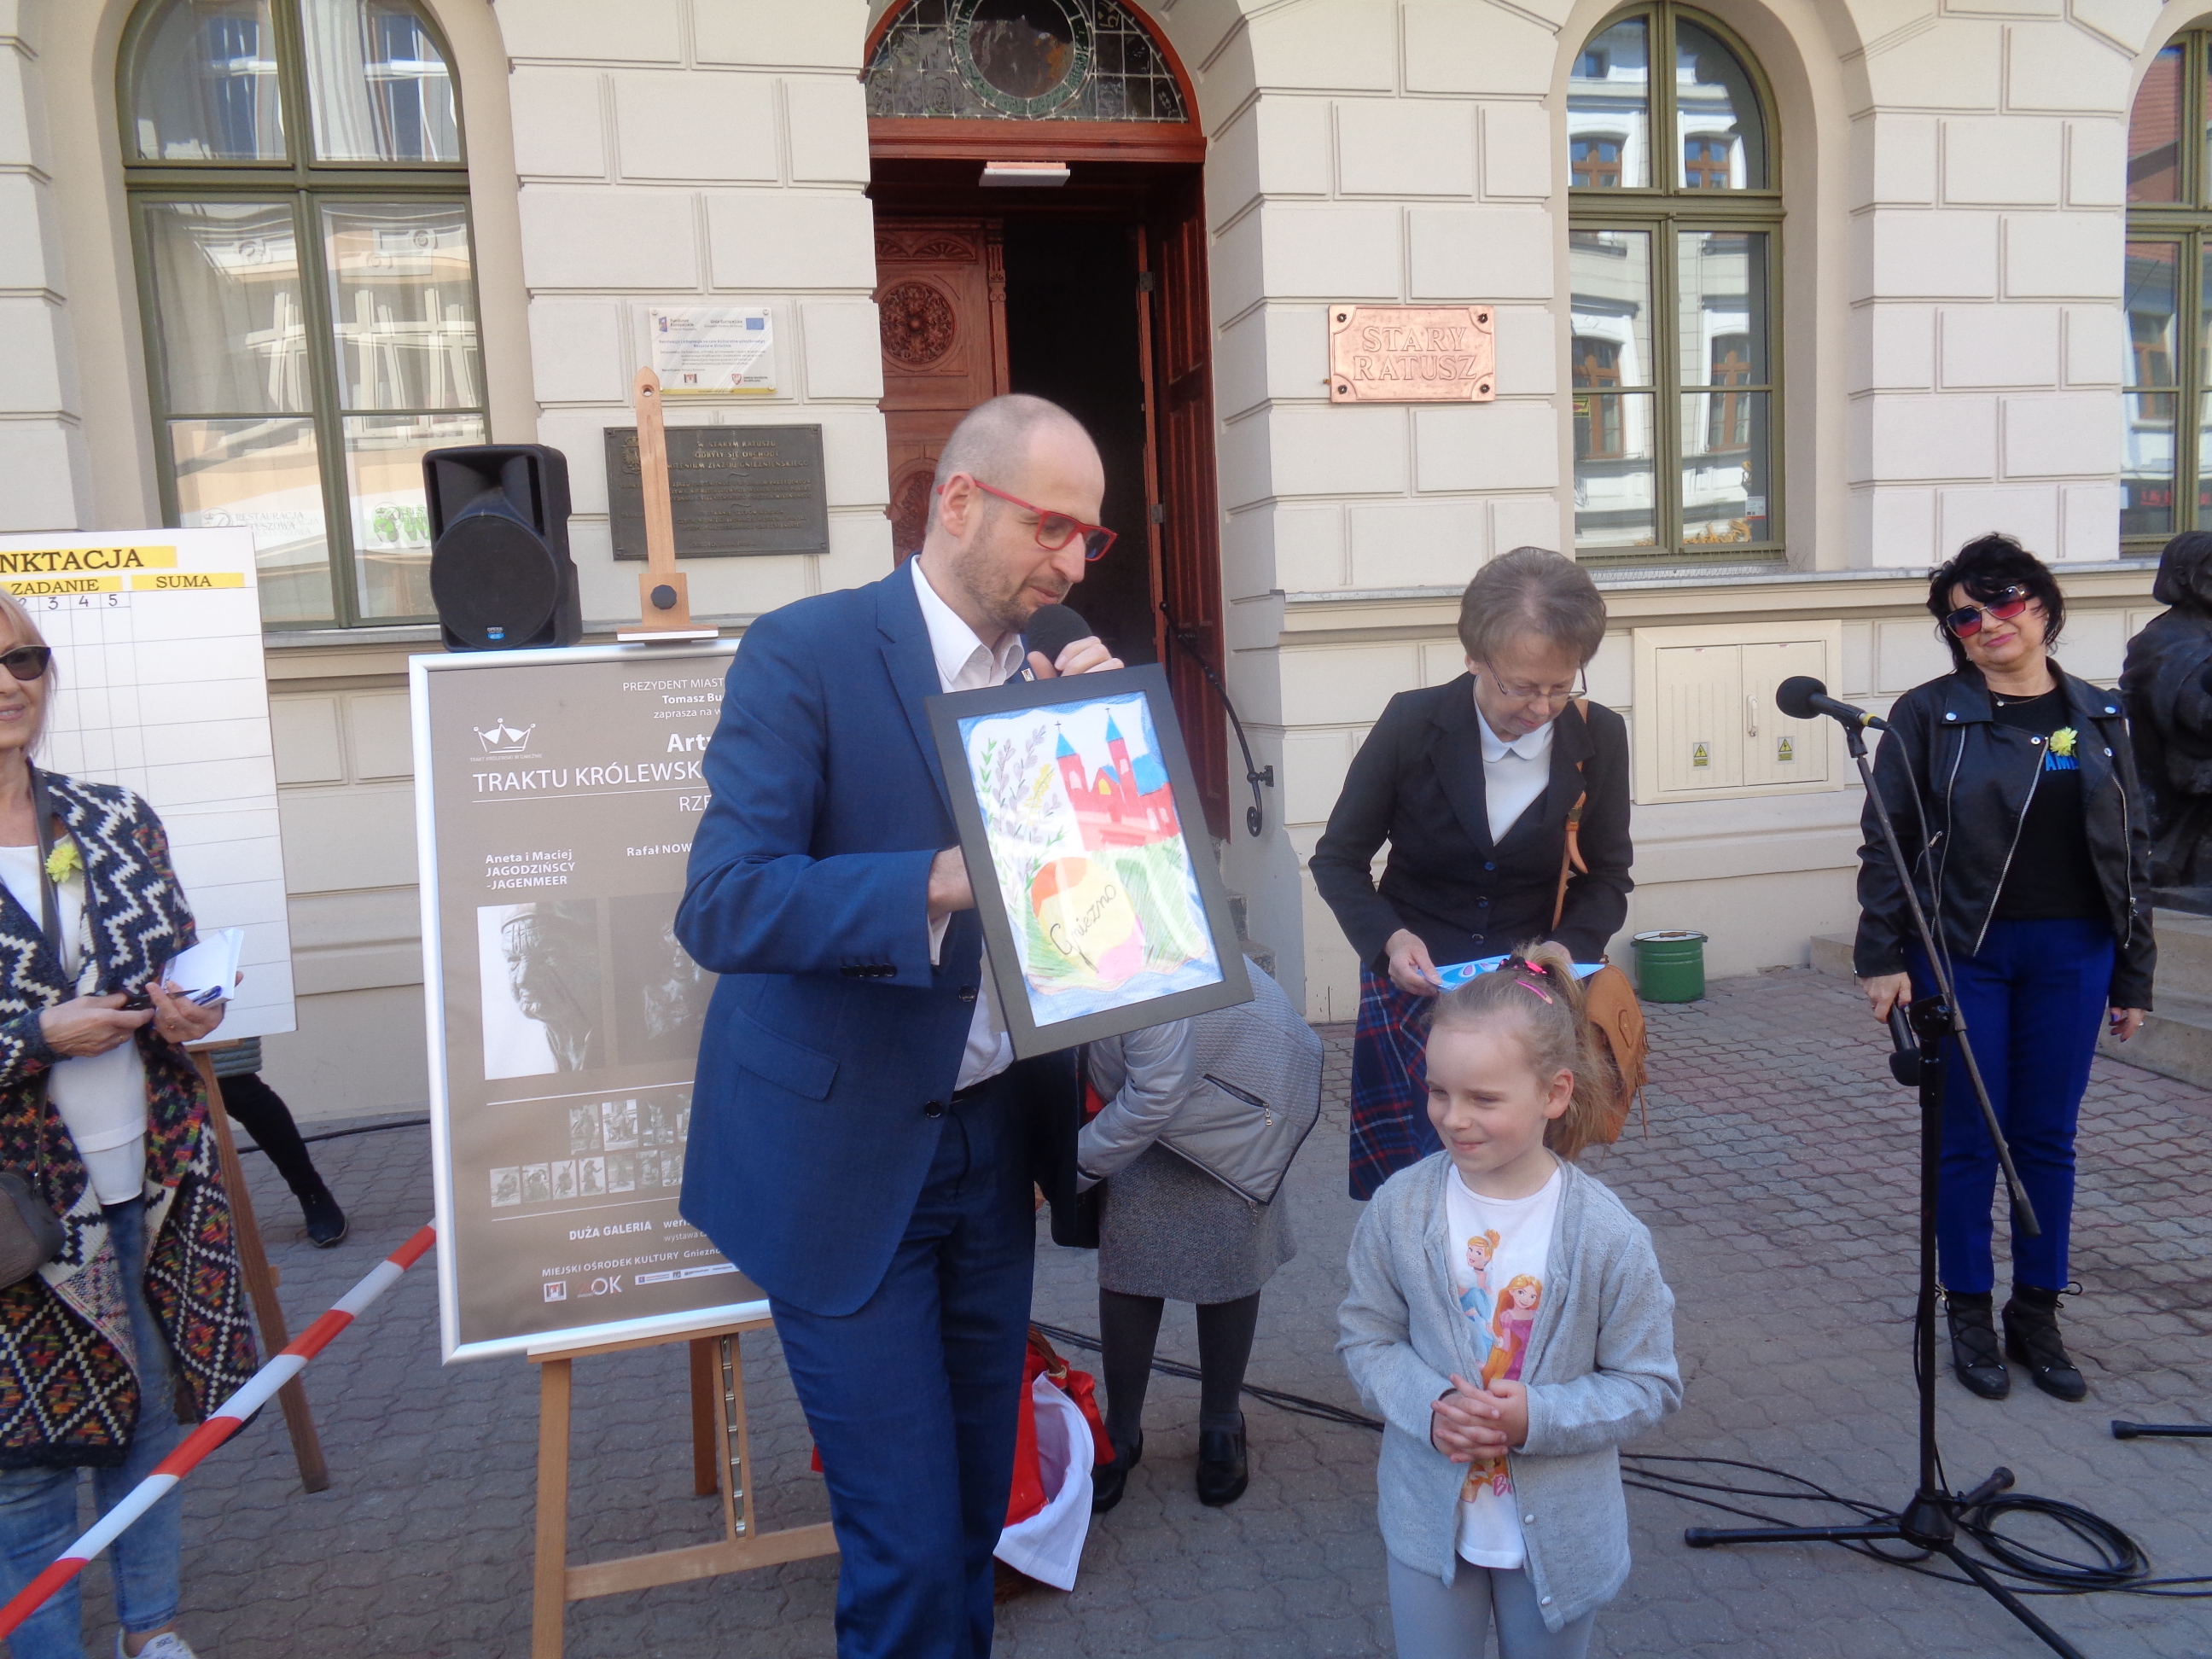 Konkurs na przyszłoroczną kartkę wielkanocną Miasta Gniezna i Biblioteki rozwiązany